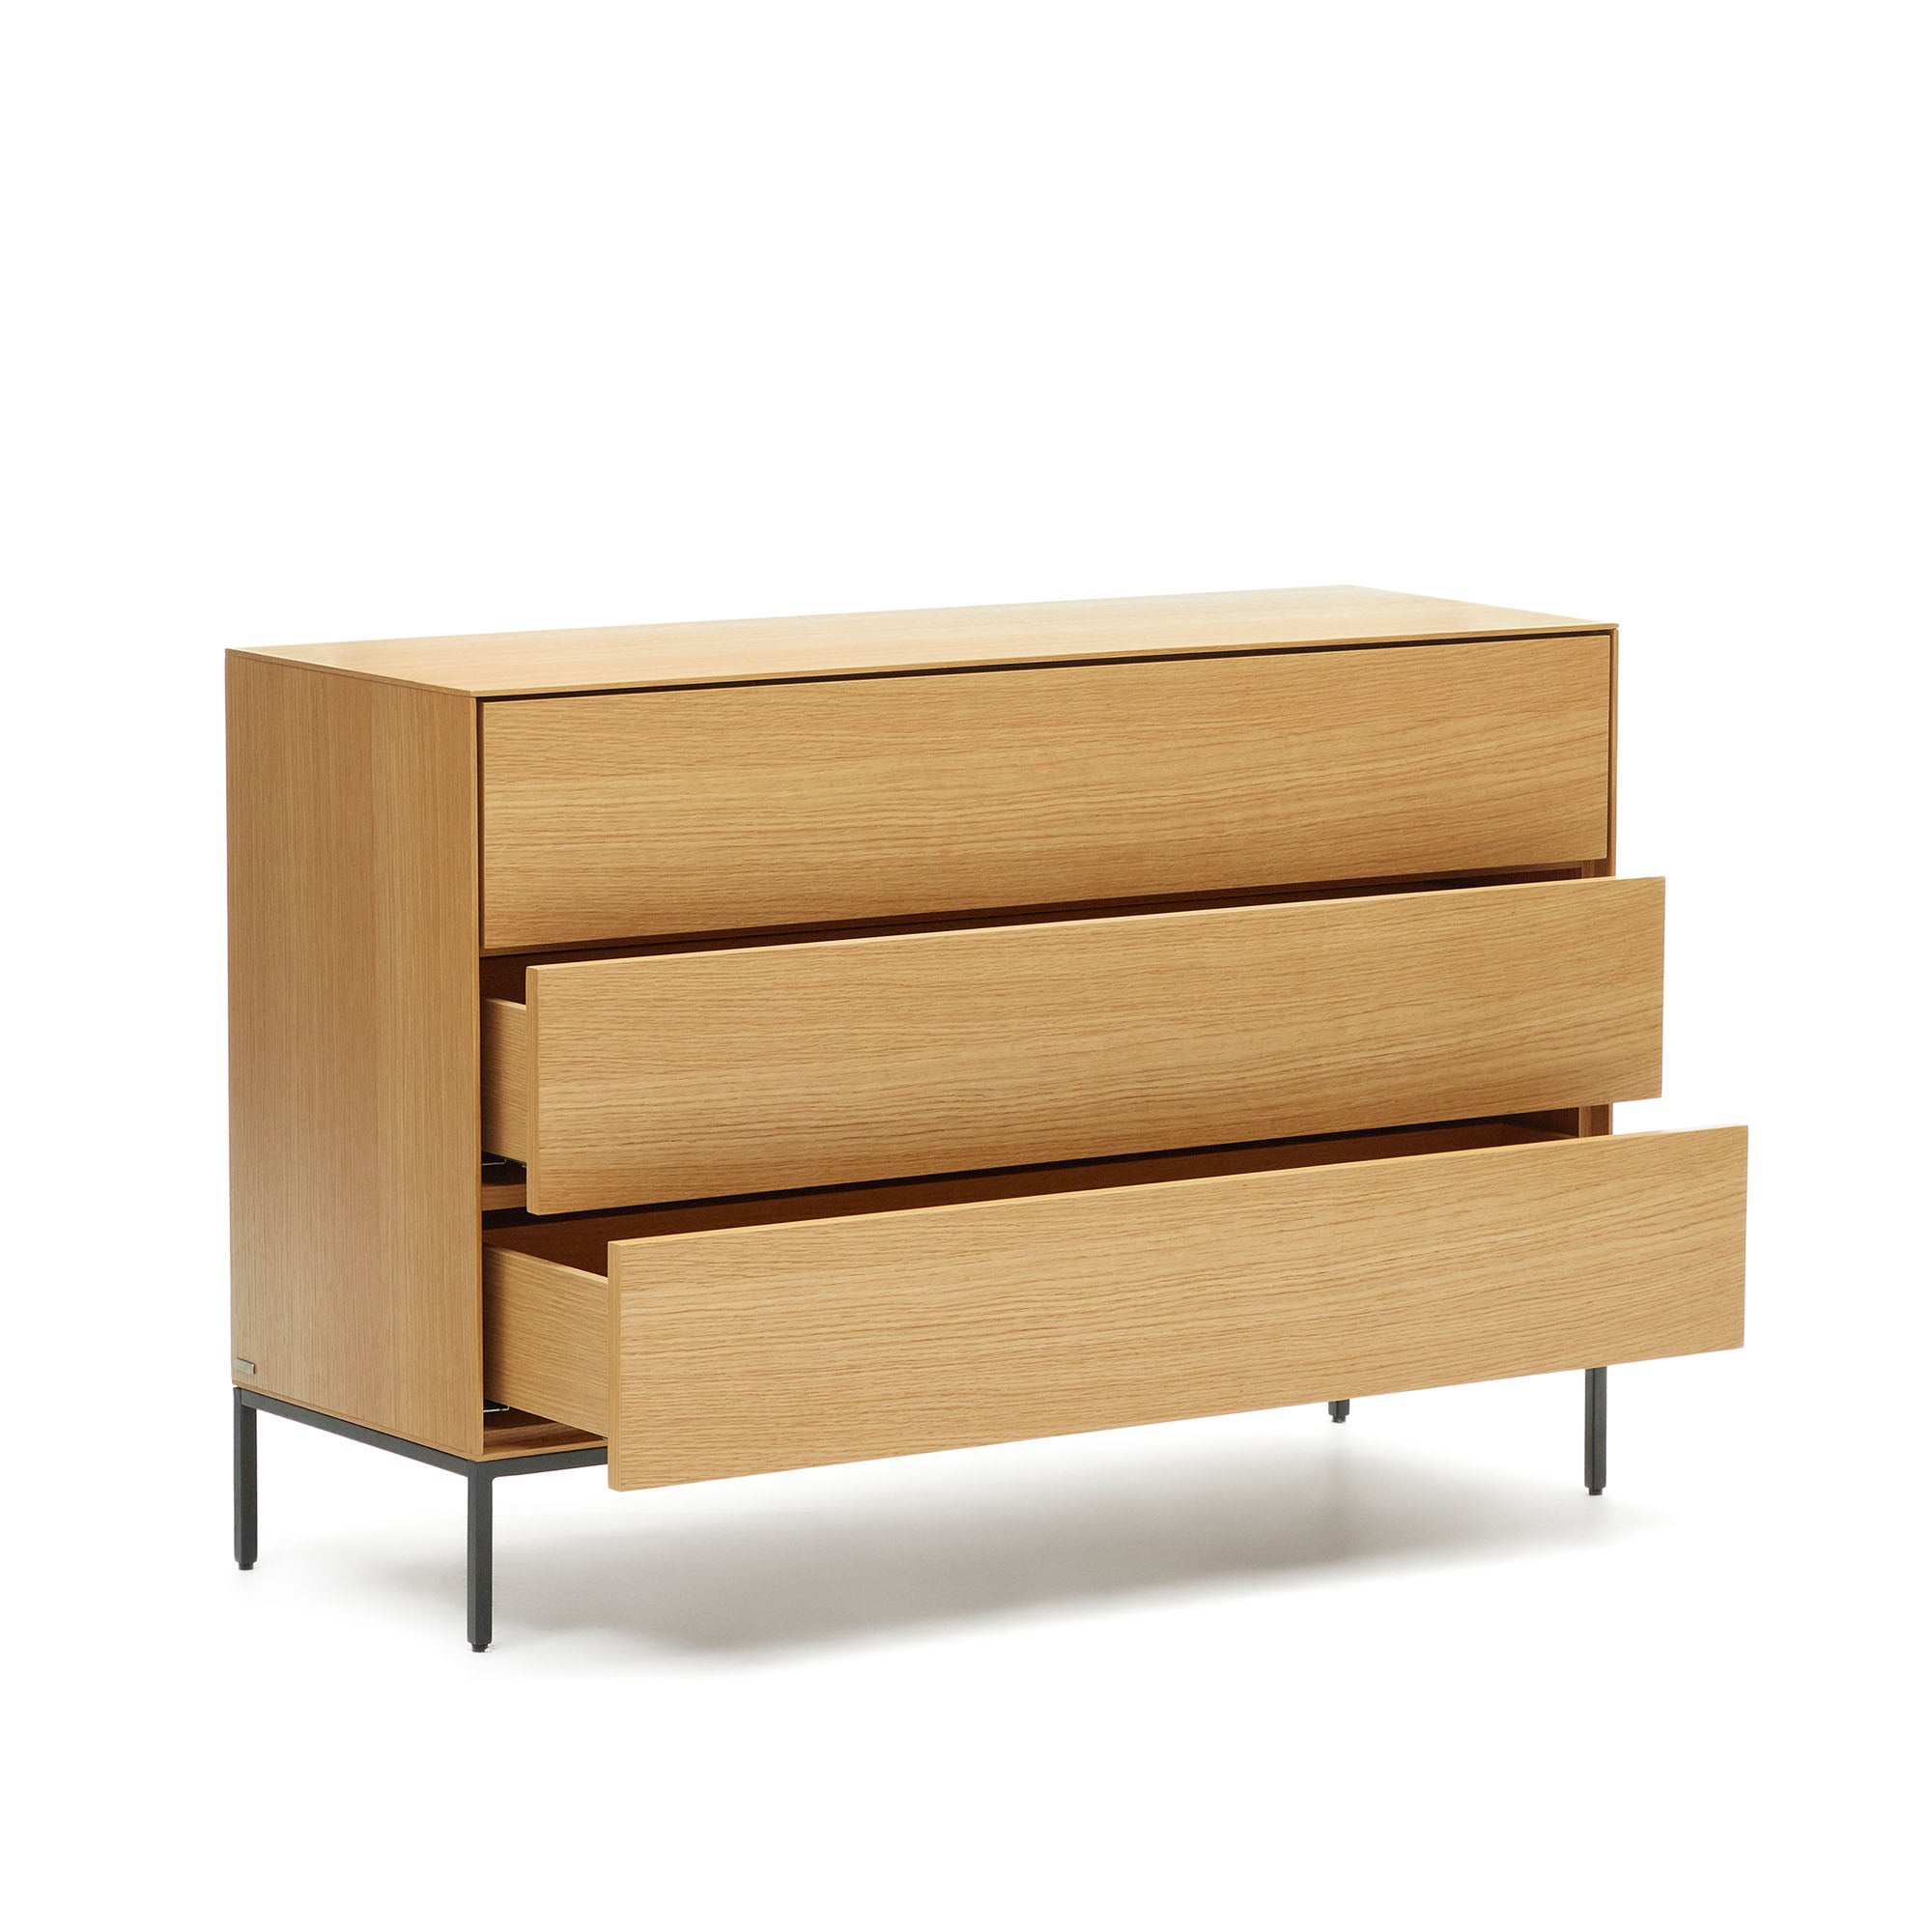 Vedrana 3 drawer chest of drawers in oak veneer with black steel legs, 110 x 75 cm